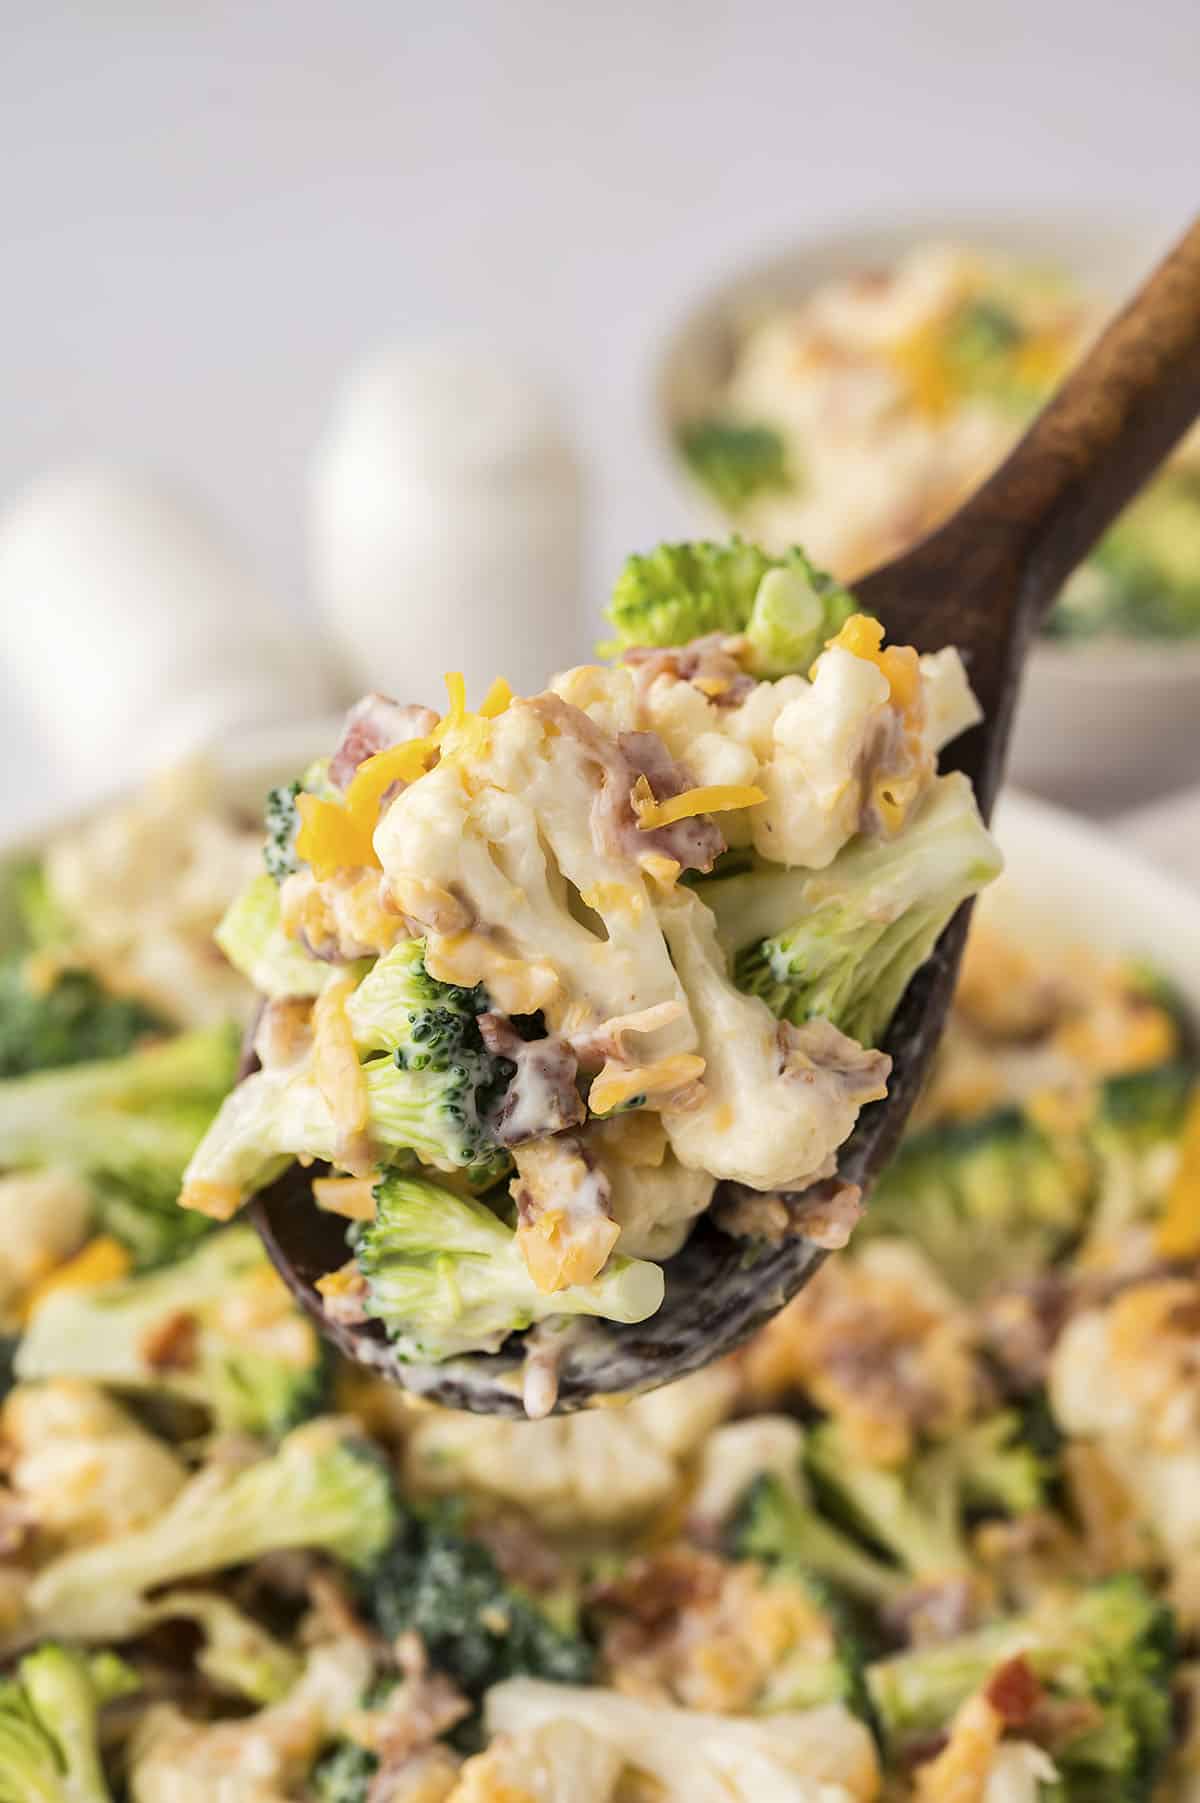 Amish broccoli salad on wooden spoon.